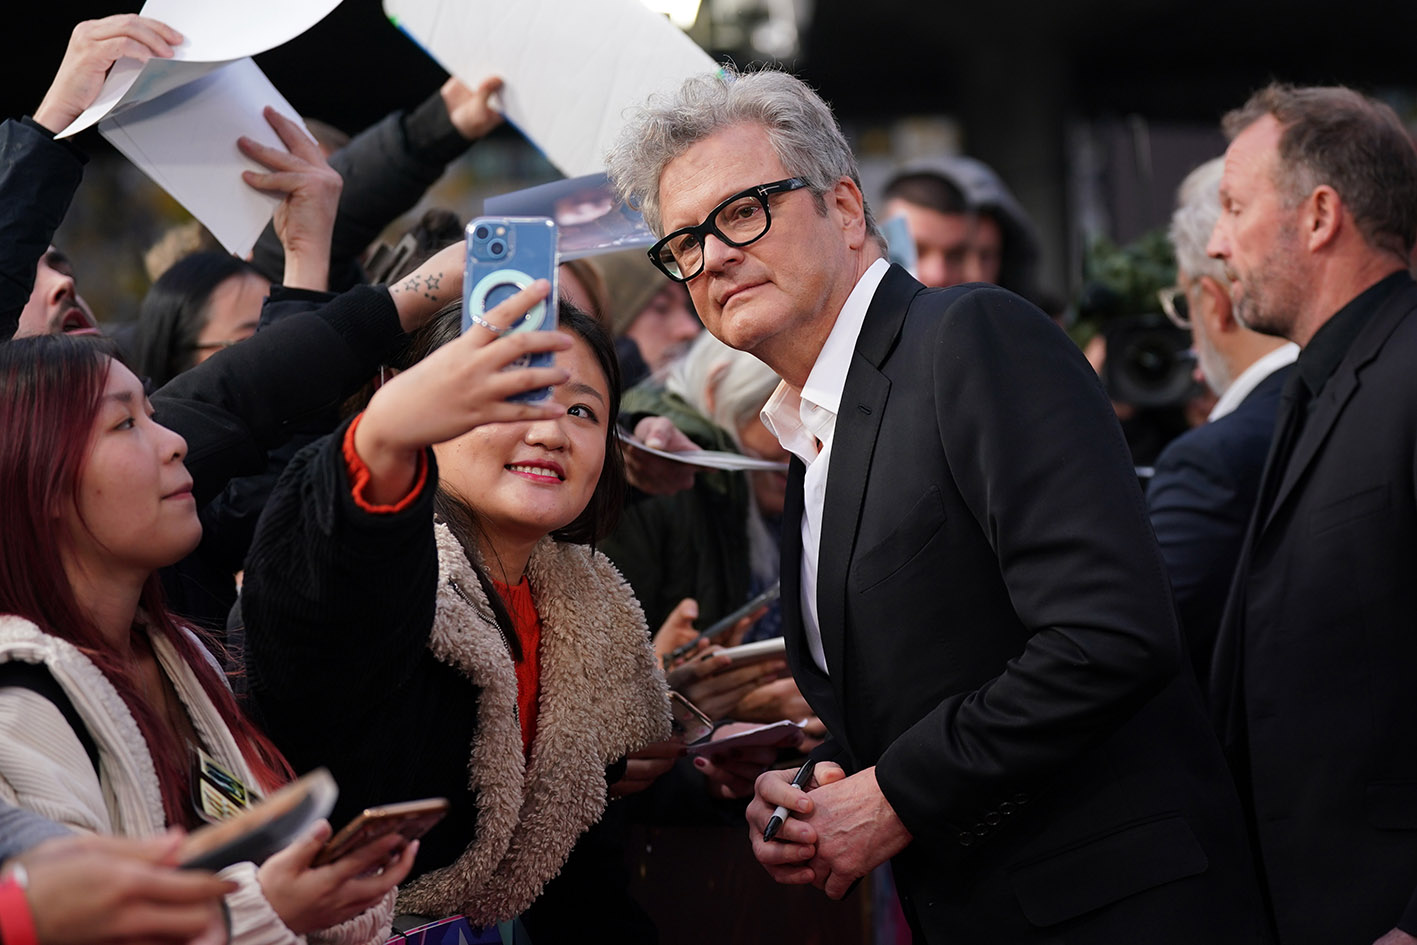 Ο Colin Firth παρευρέθηκε στην ευρωπαϊκή πρεμιέρα της ταινίας "Empire of Light" κατά τη διάρκεια του Φεστιβάλ Κινηματογράφου του Λονδίνου στις 21 Οκτωβρίου 2022.